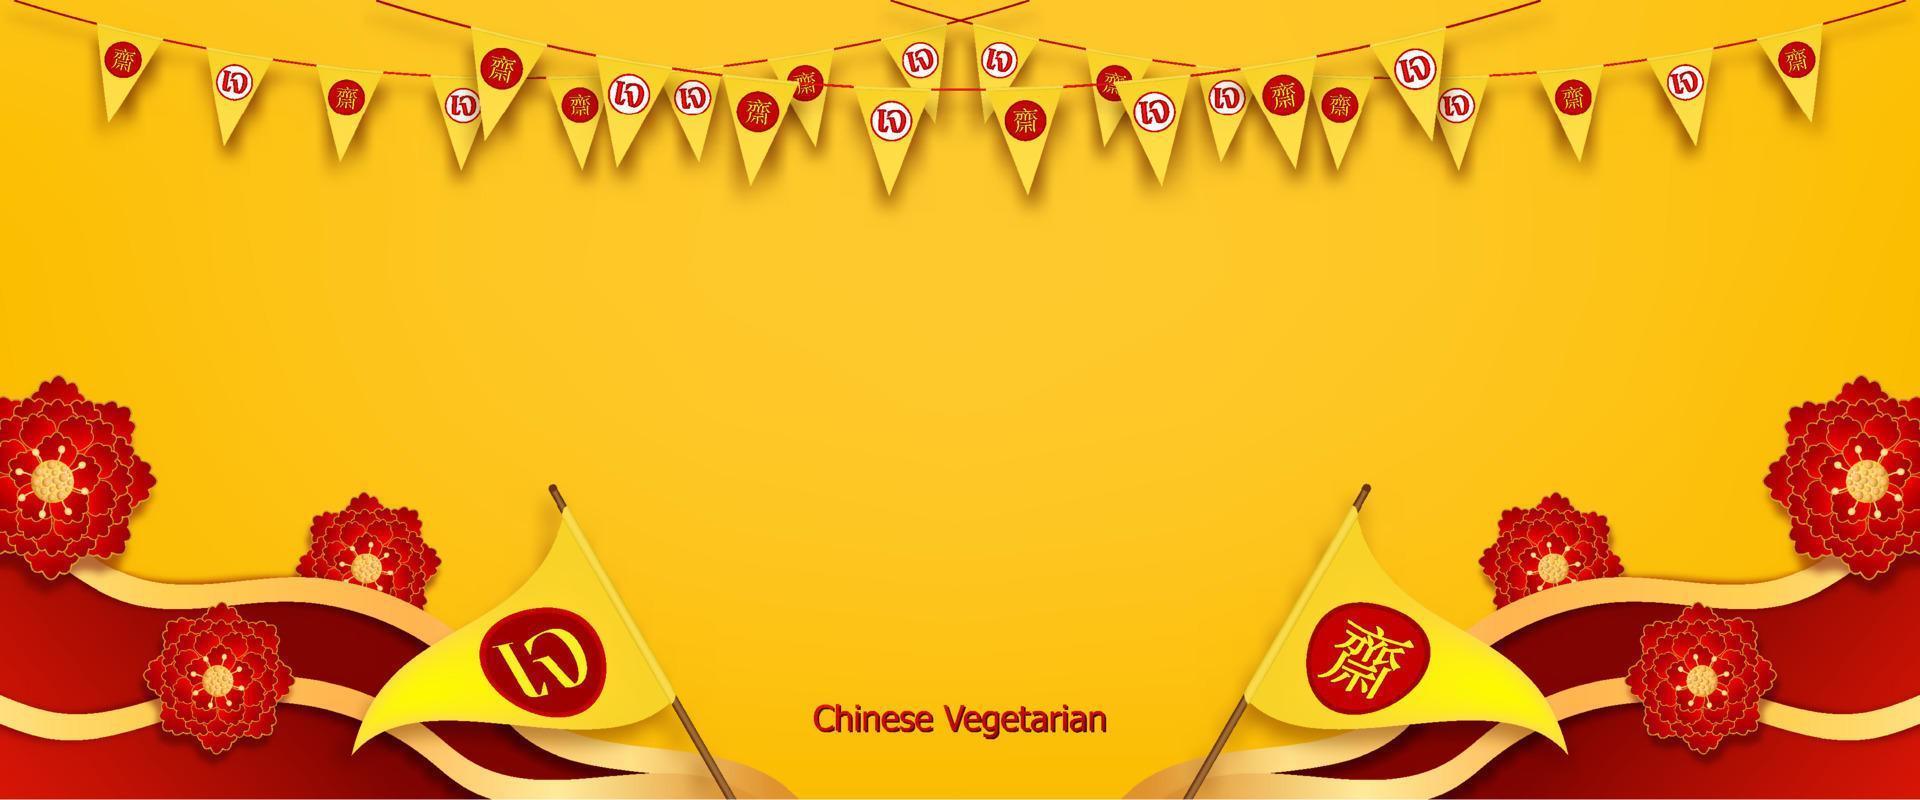 kinesisk vegetarisk festival och asiatiska inslag på bakgrunden. kinesisk översättning är vegetarisk festival av vektorillustration. vektor